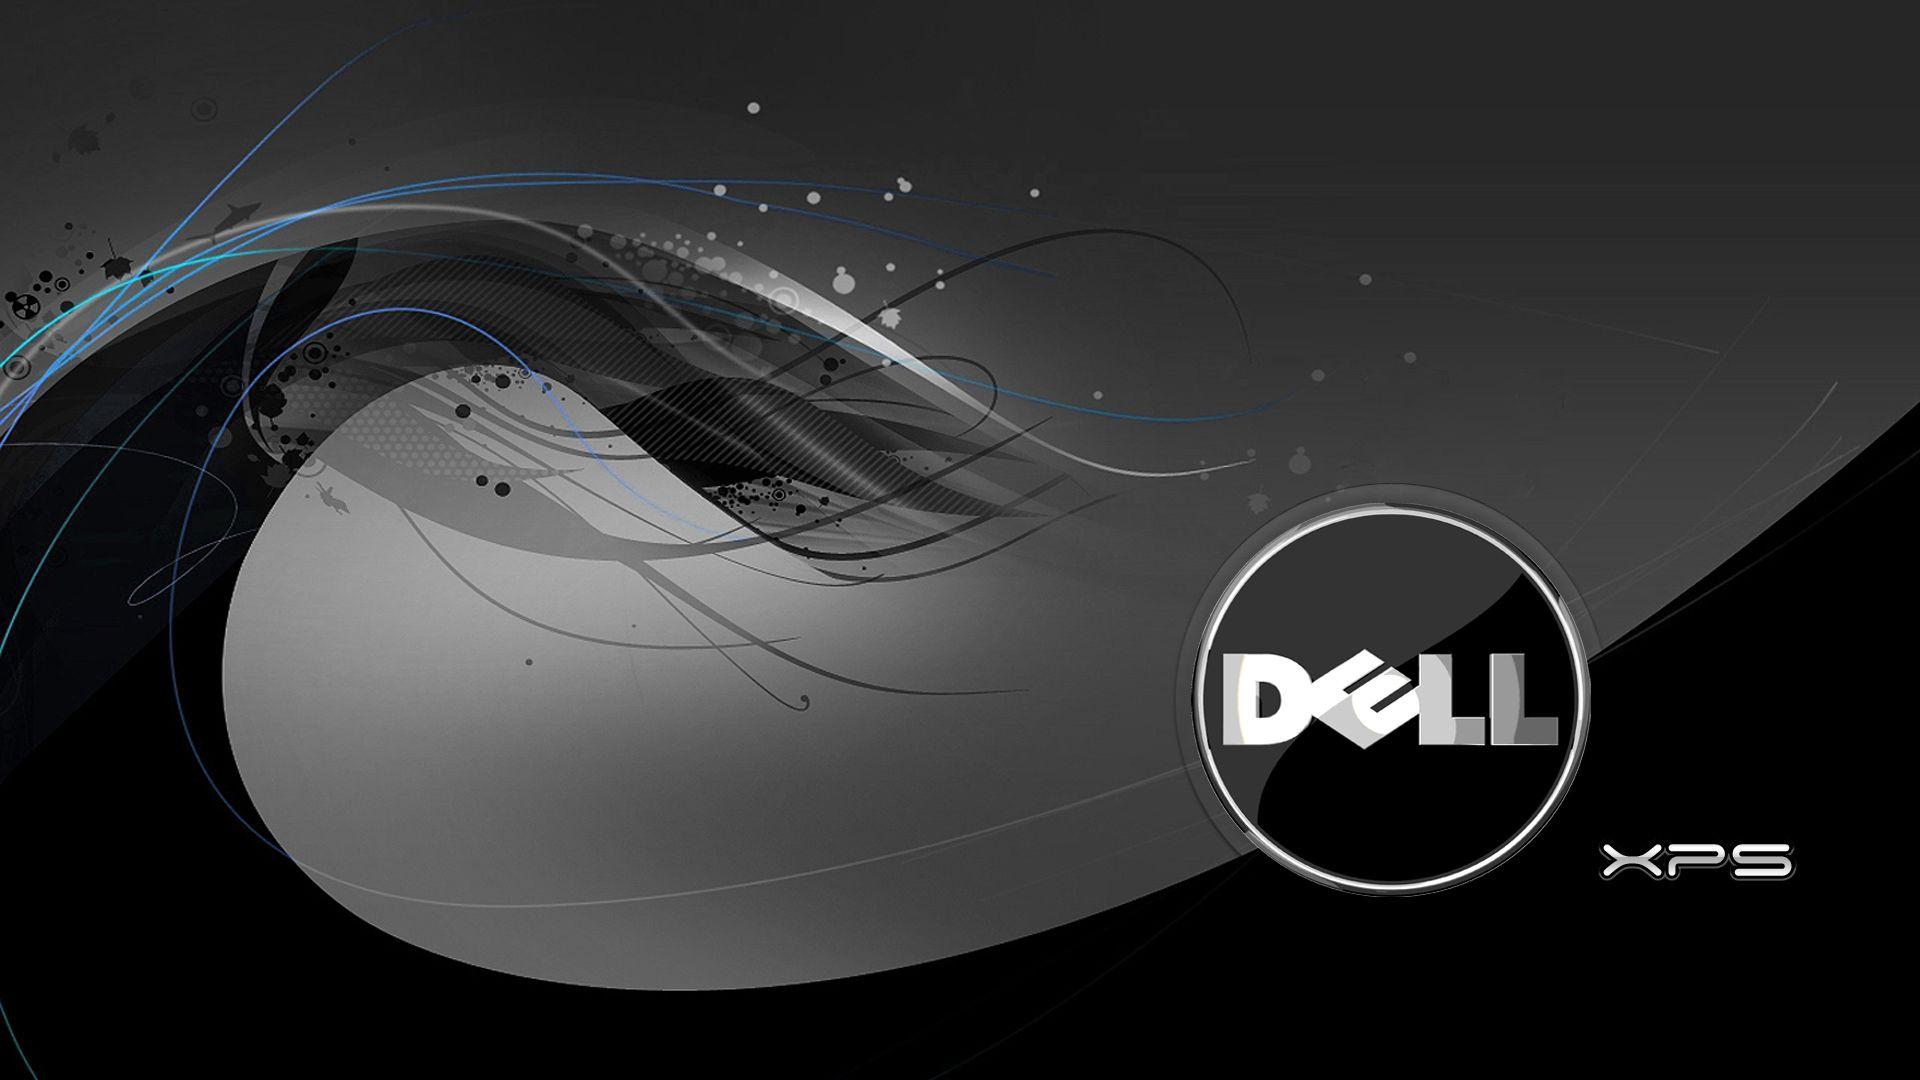 Bạn chỉ muốn tìm kiếm những hình nền Dell đẹp và độc đáo? Hãy ghé thăm trang web Wallpapers Dell - Wallpaper Cave, nơi bạn có thể khám phá những hang động các hình nền đồ sộ với nhiều chủ đề khác nhau. Hãy cho máy tính của bạn trông đẹp hơn và thú vị hơn với Wallpapers Dell - Wallpaper Cave.